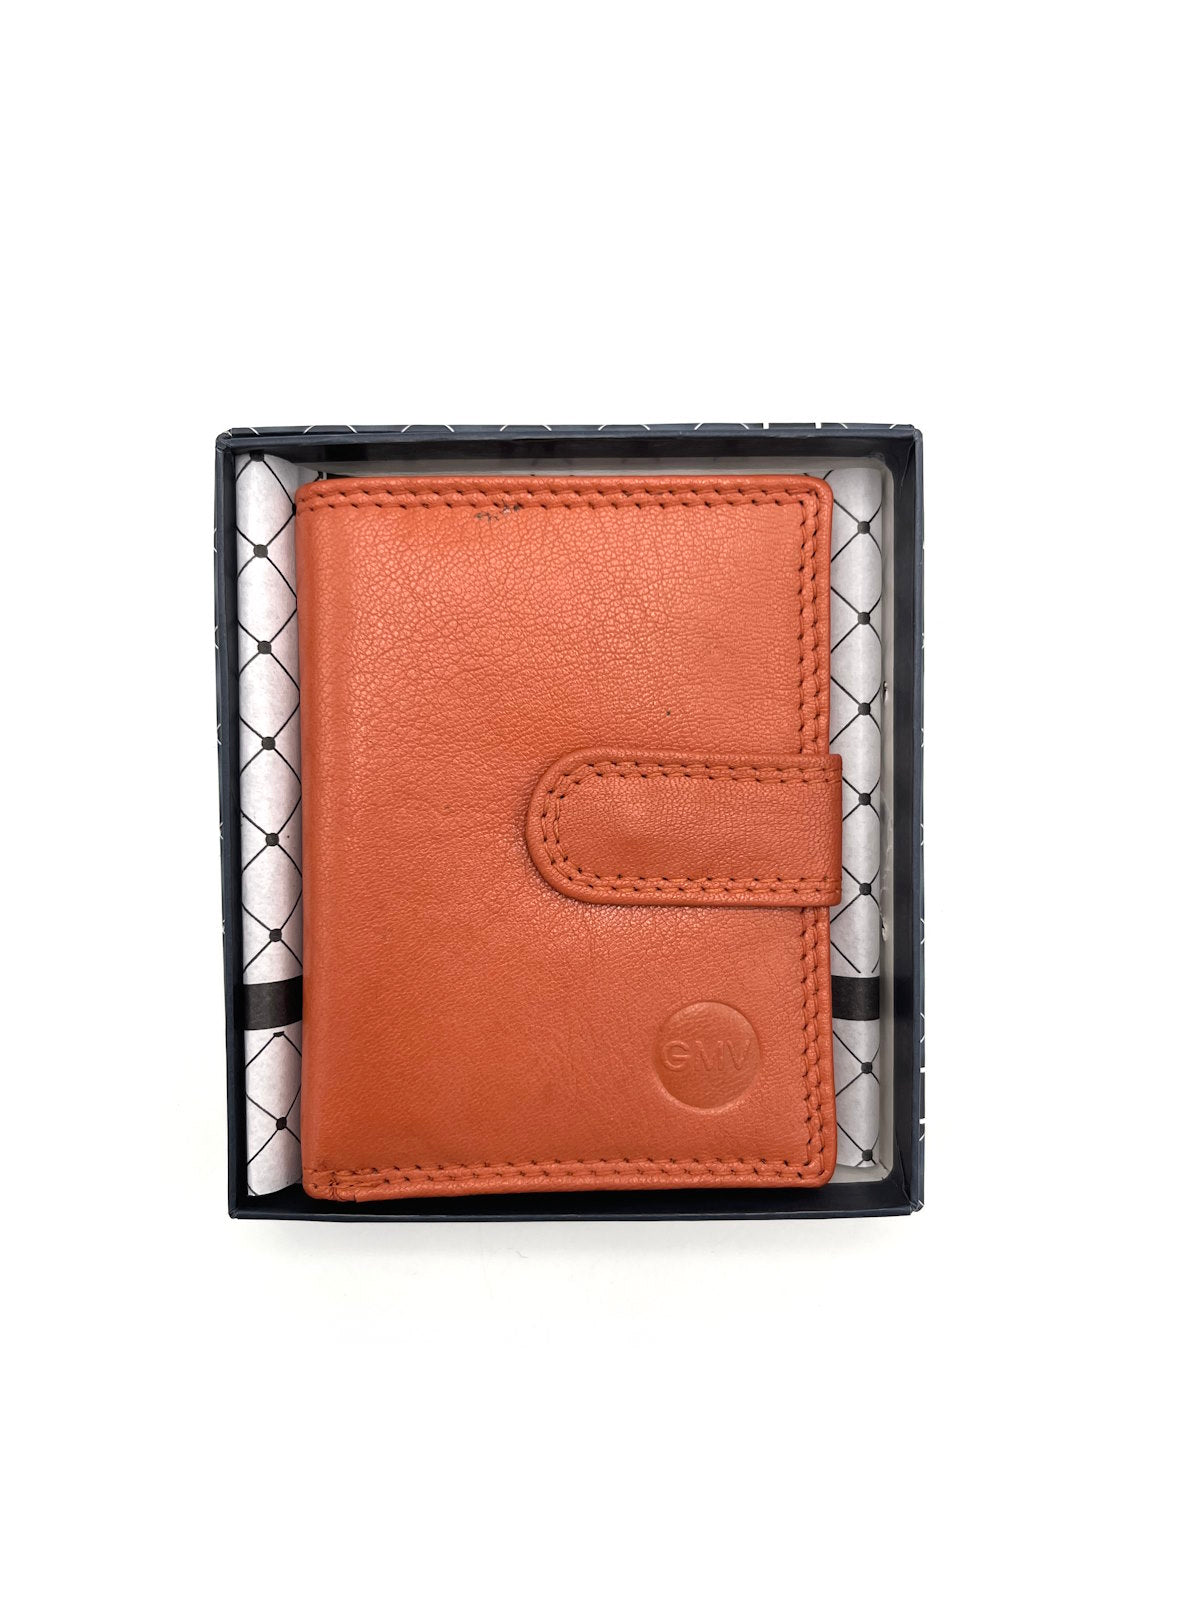 Genuine leather wallet, Brand GMV, art. GMV80-305